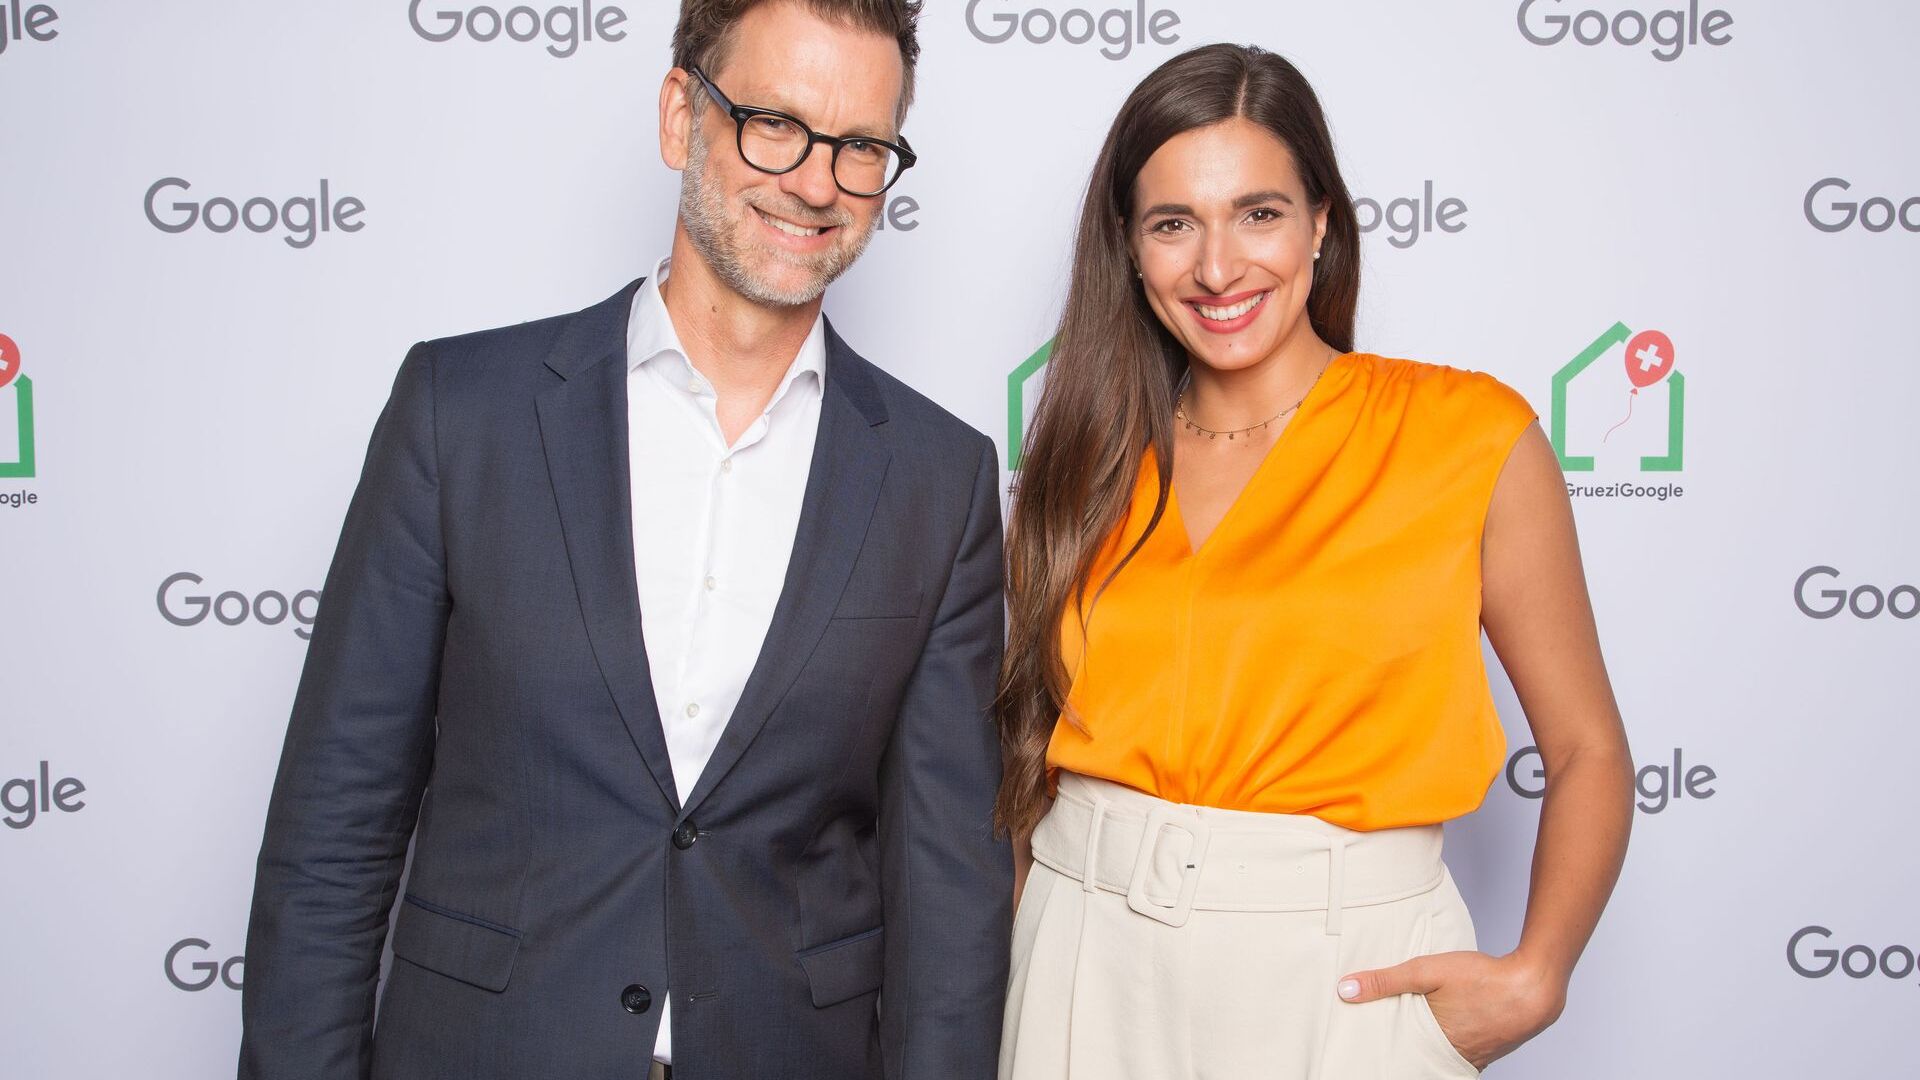 Andreas Briese, dyrektor krajowy YouTube w Niemczech i dyrektor regionalny na Europę Środkową oraz Sally z Sally's Welt (kanał YouTube) uczestniczyli w oficjalnej inauguracji nowego kampusu Europaallee Google w Zurychu 27 czerwca 2022 r.